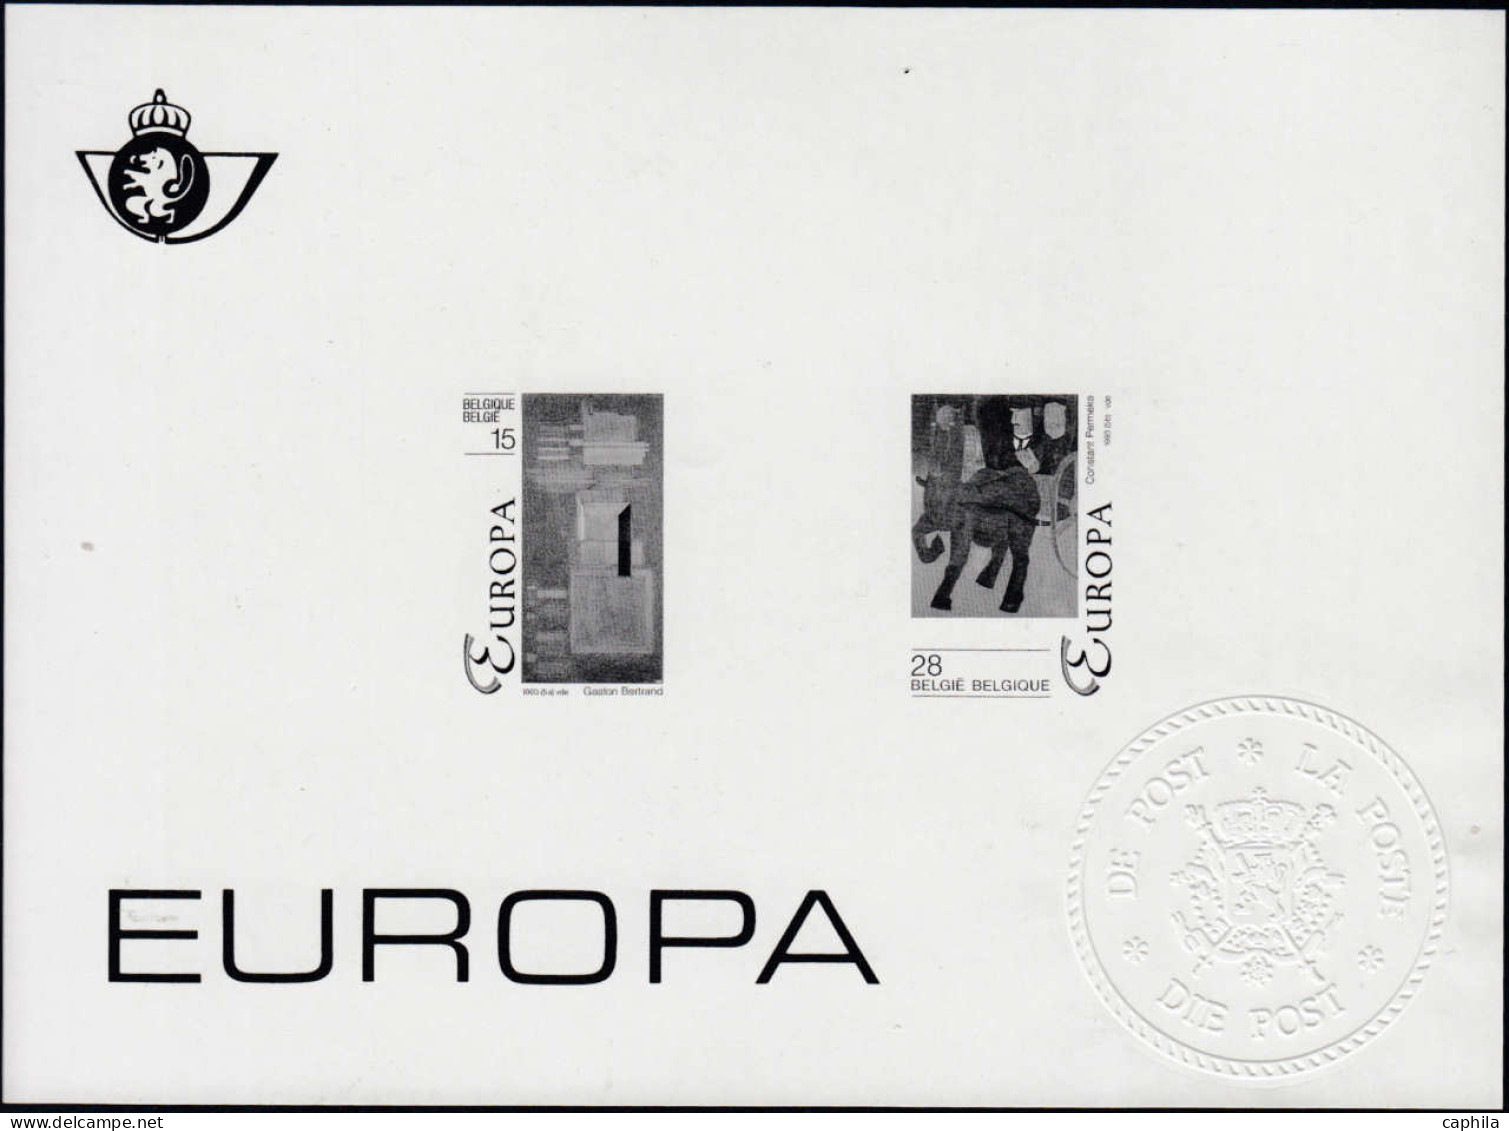 - BELGIQUE FEUILLETS NOIR ET BLANC, 1987/20113, (type ZW/NB), en pochette, cote COB: 420 €